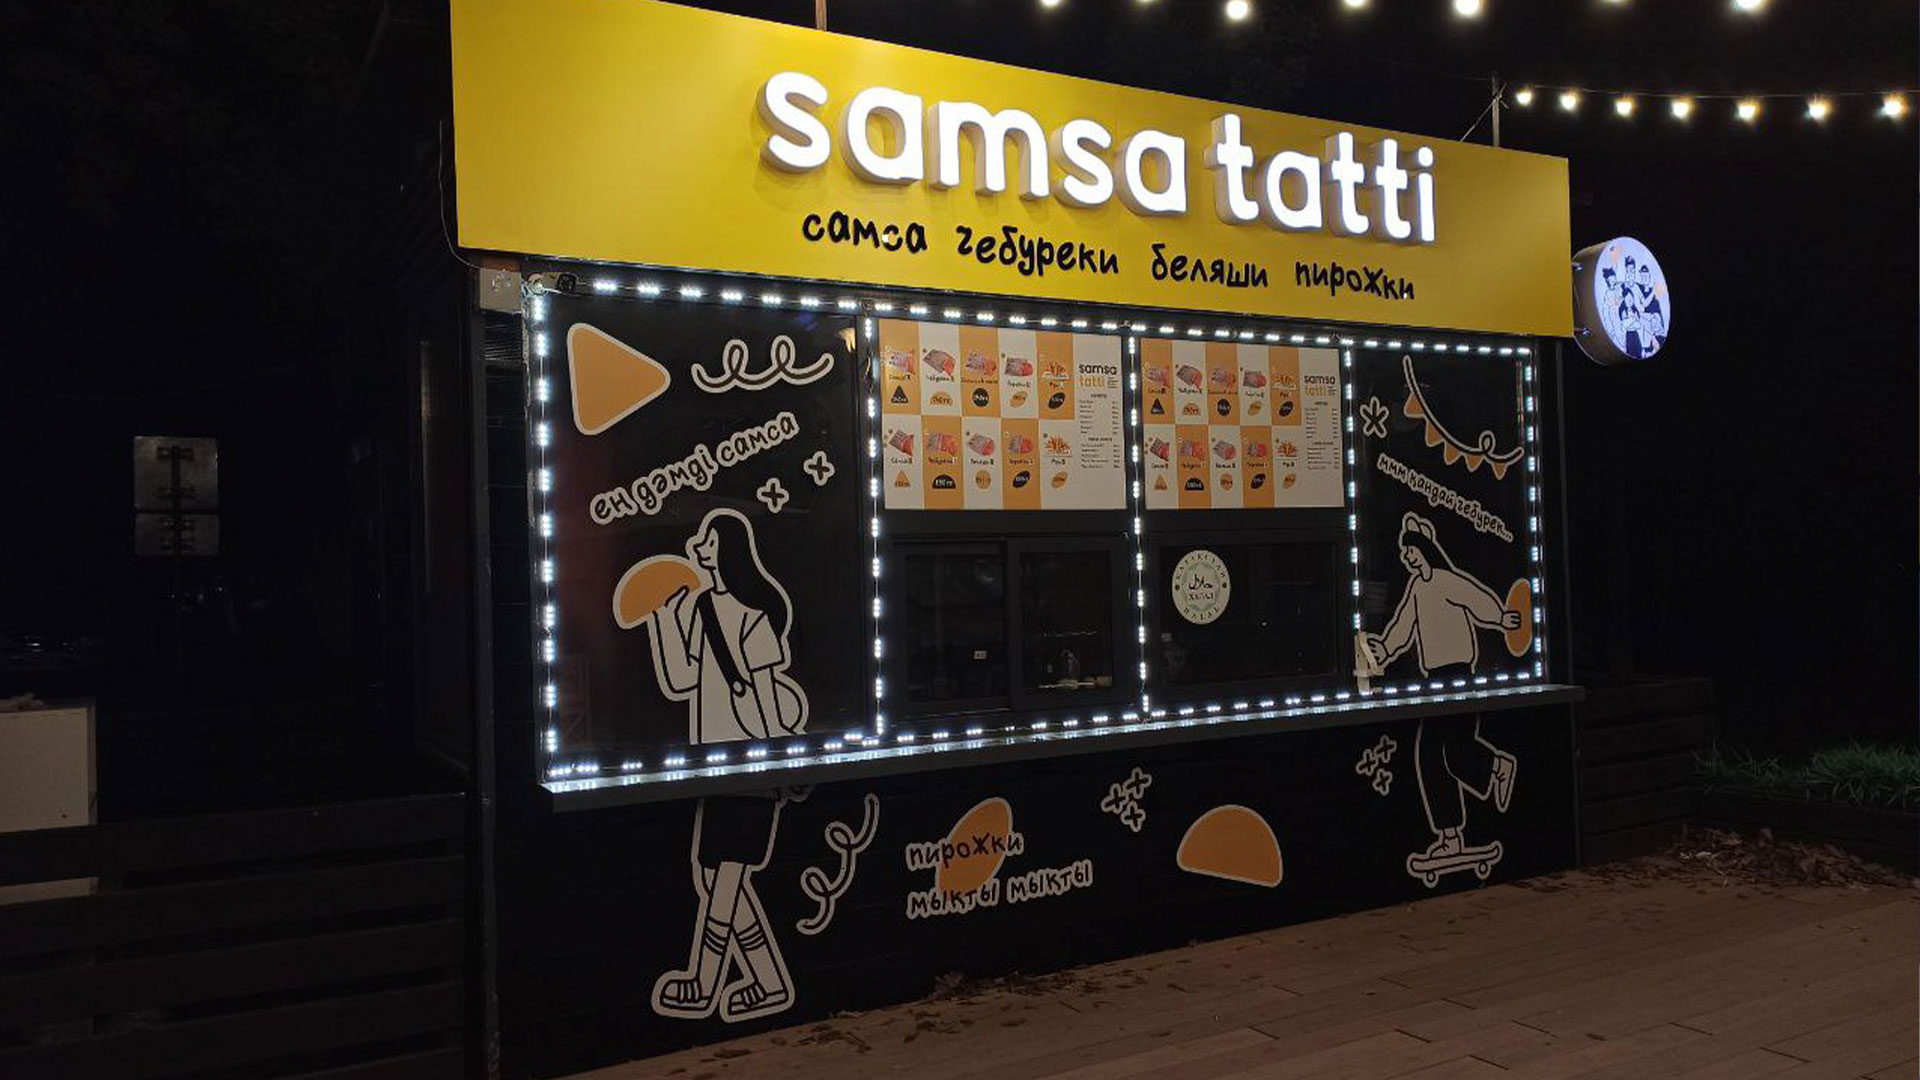 Производство рекламы “Samsa tatti”​